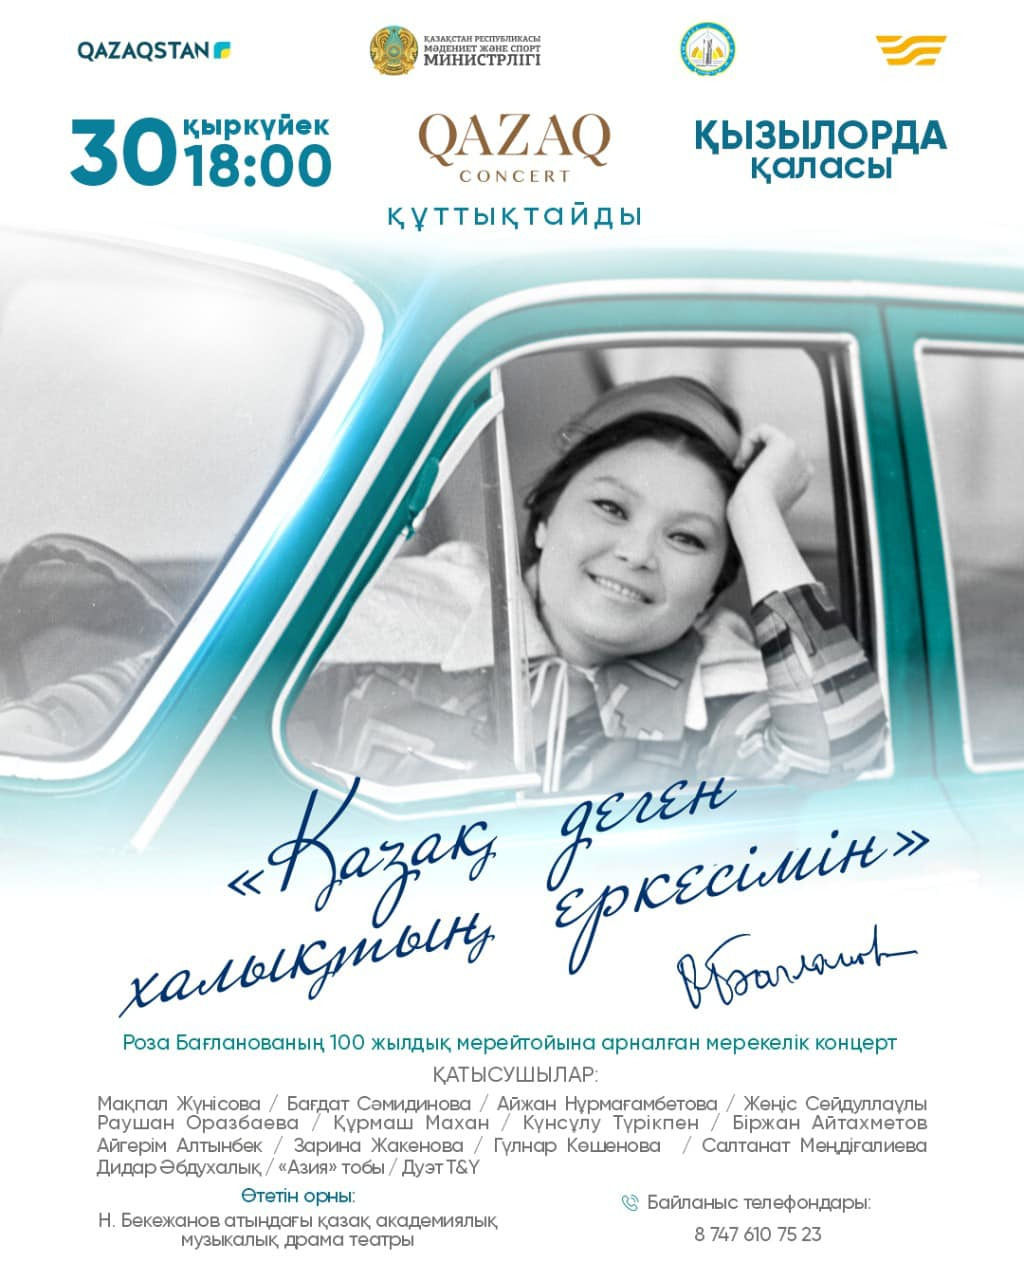 Состоится концерт, посвященный 100-летию Розы Баглановой